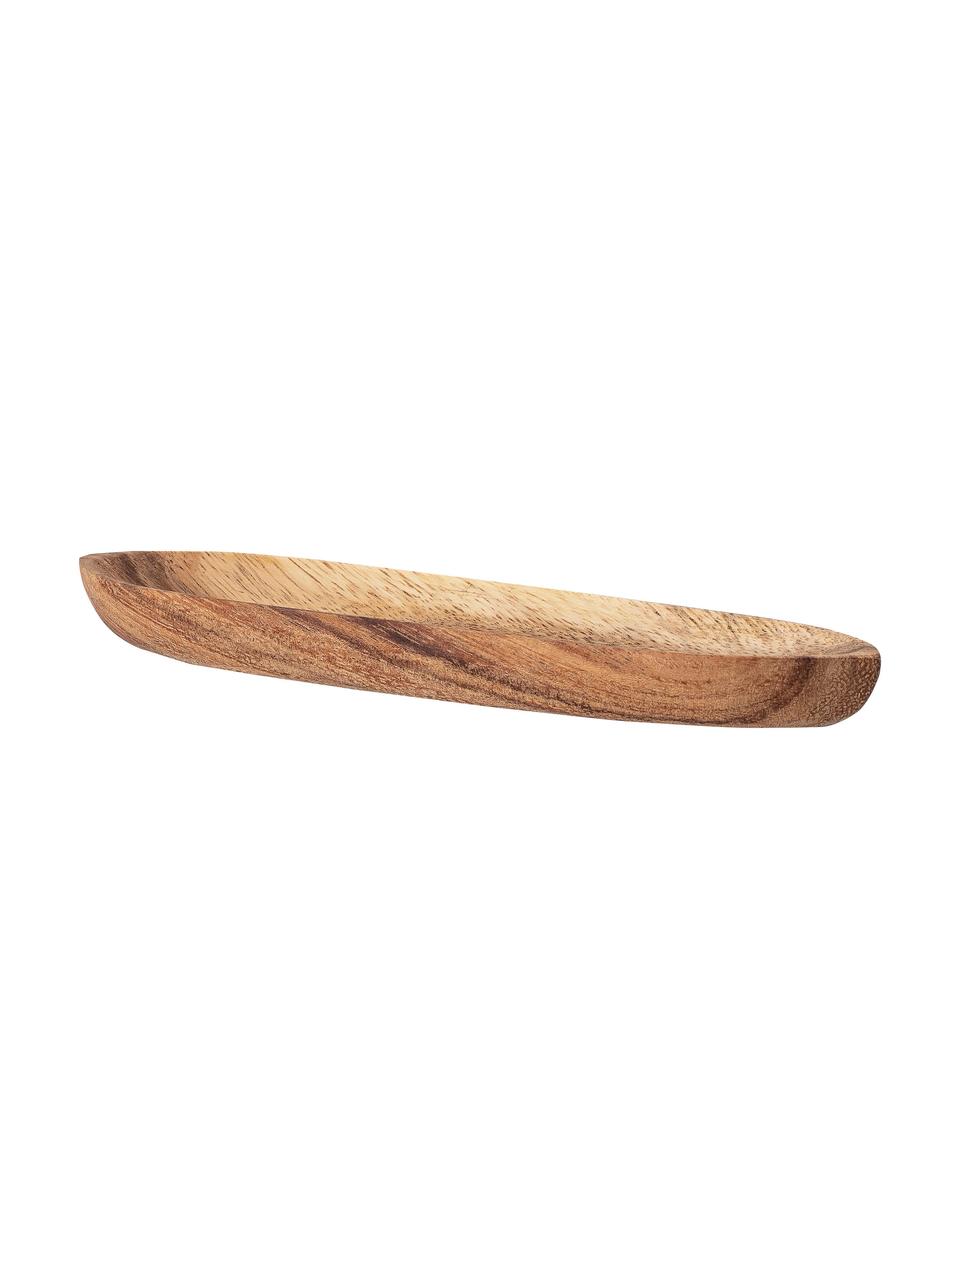 Piatto da portata in legno di acacia Evely, 20x5 cm, Legno di acacia, Marrone, Lung. 20 x Larg. 5 cm